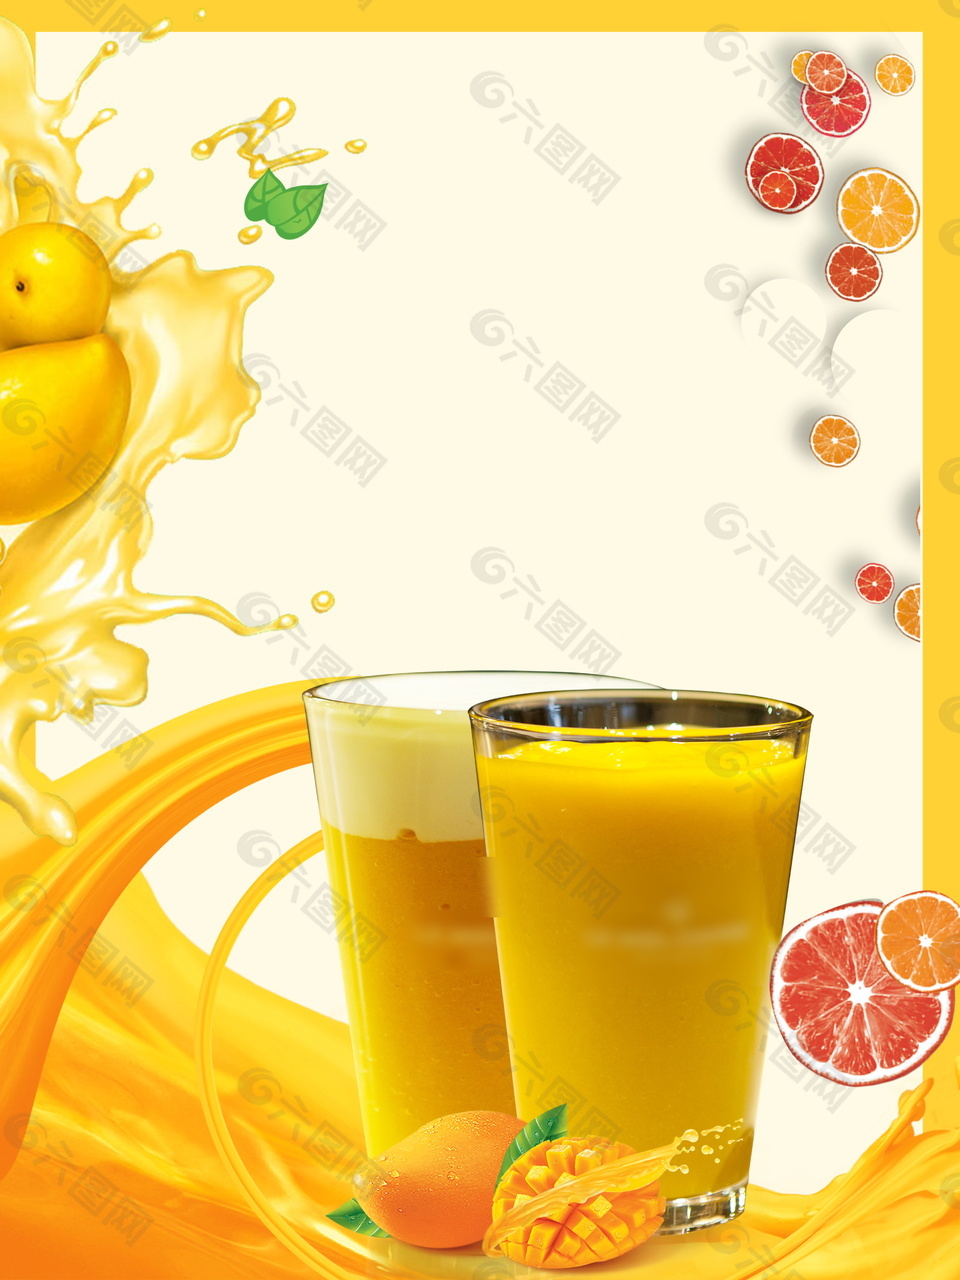 夏日橙汁芒果汁海报背景素材